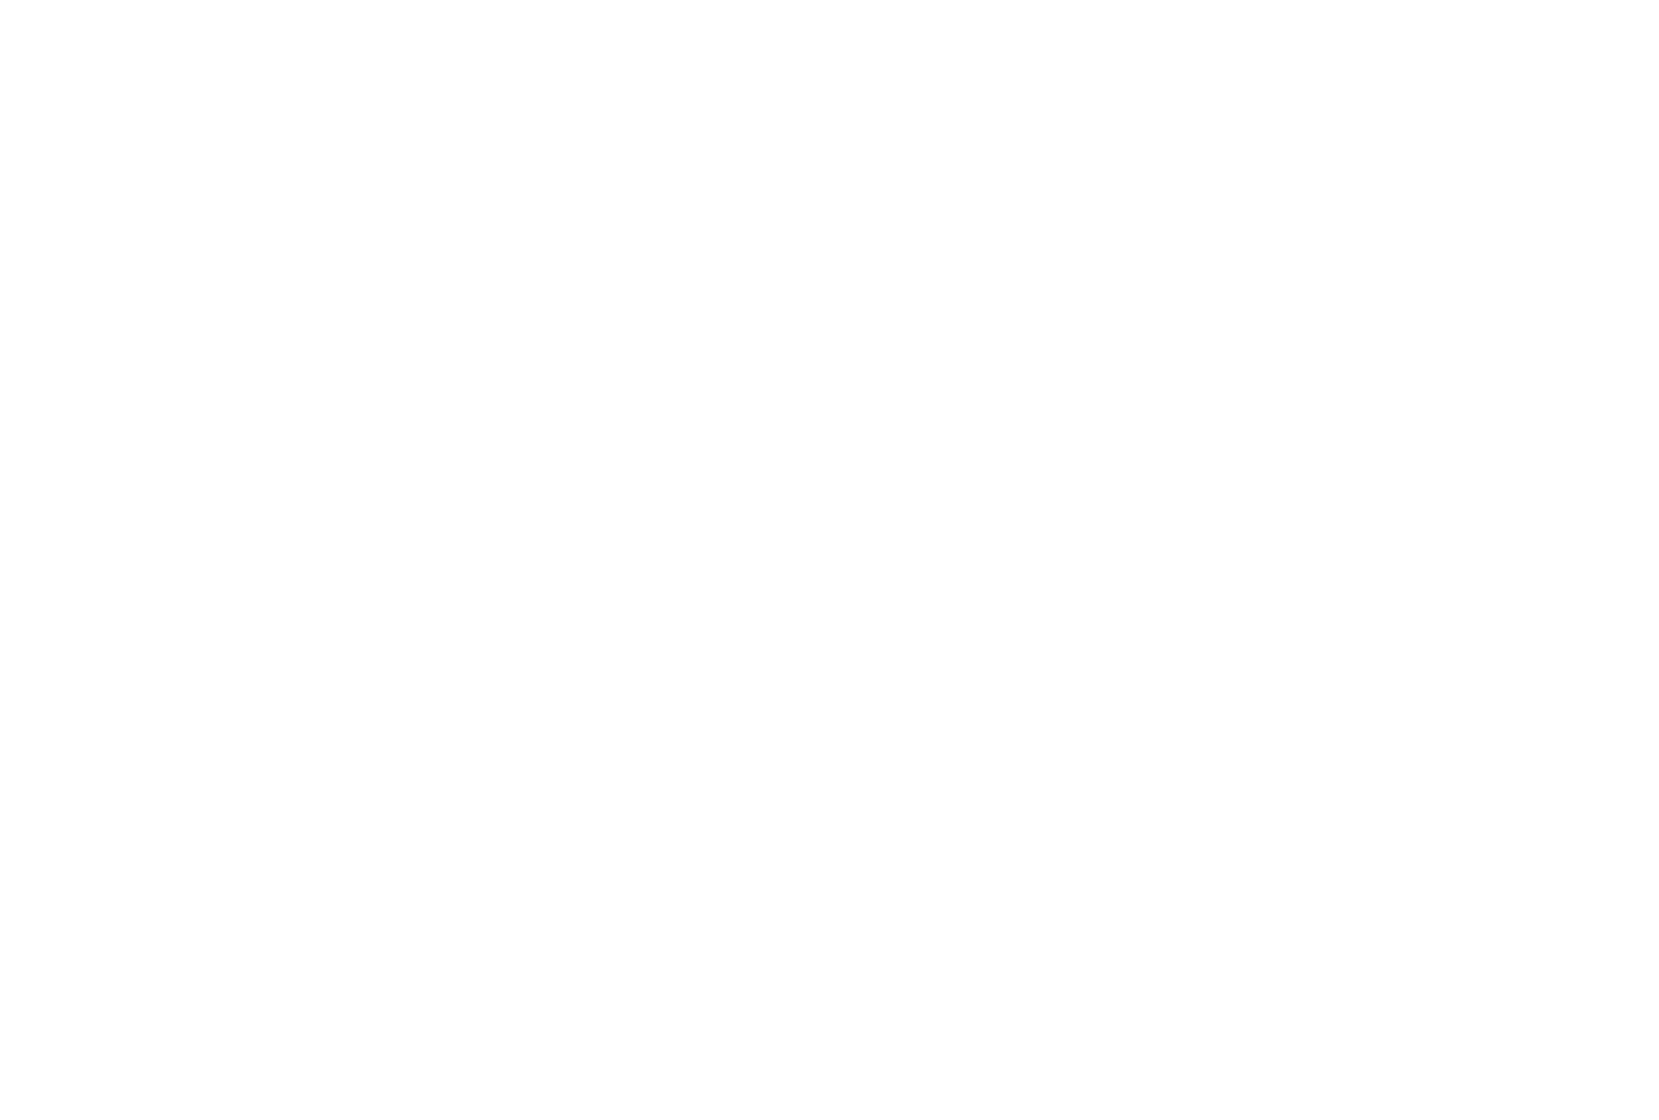 Un baño moderno con un tocador doble reflectante colocado contra una pared de madera oscura, con tiras de iluminación verticales, con un arreglo decorativo de esferas rellenas de piedra pulida en la pared y un vistazo a una acogedora sala de estar con un sofá a través del reflejo del espejo